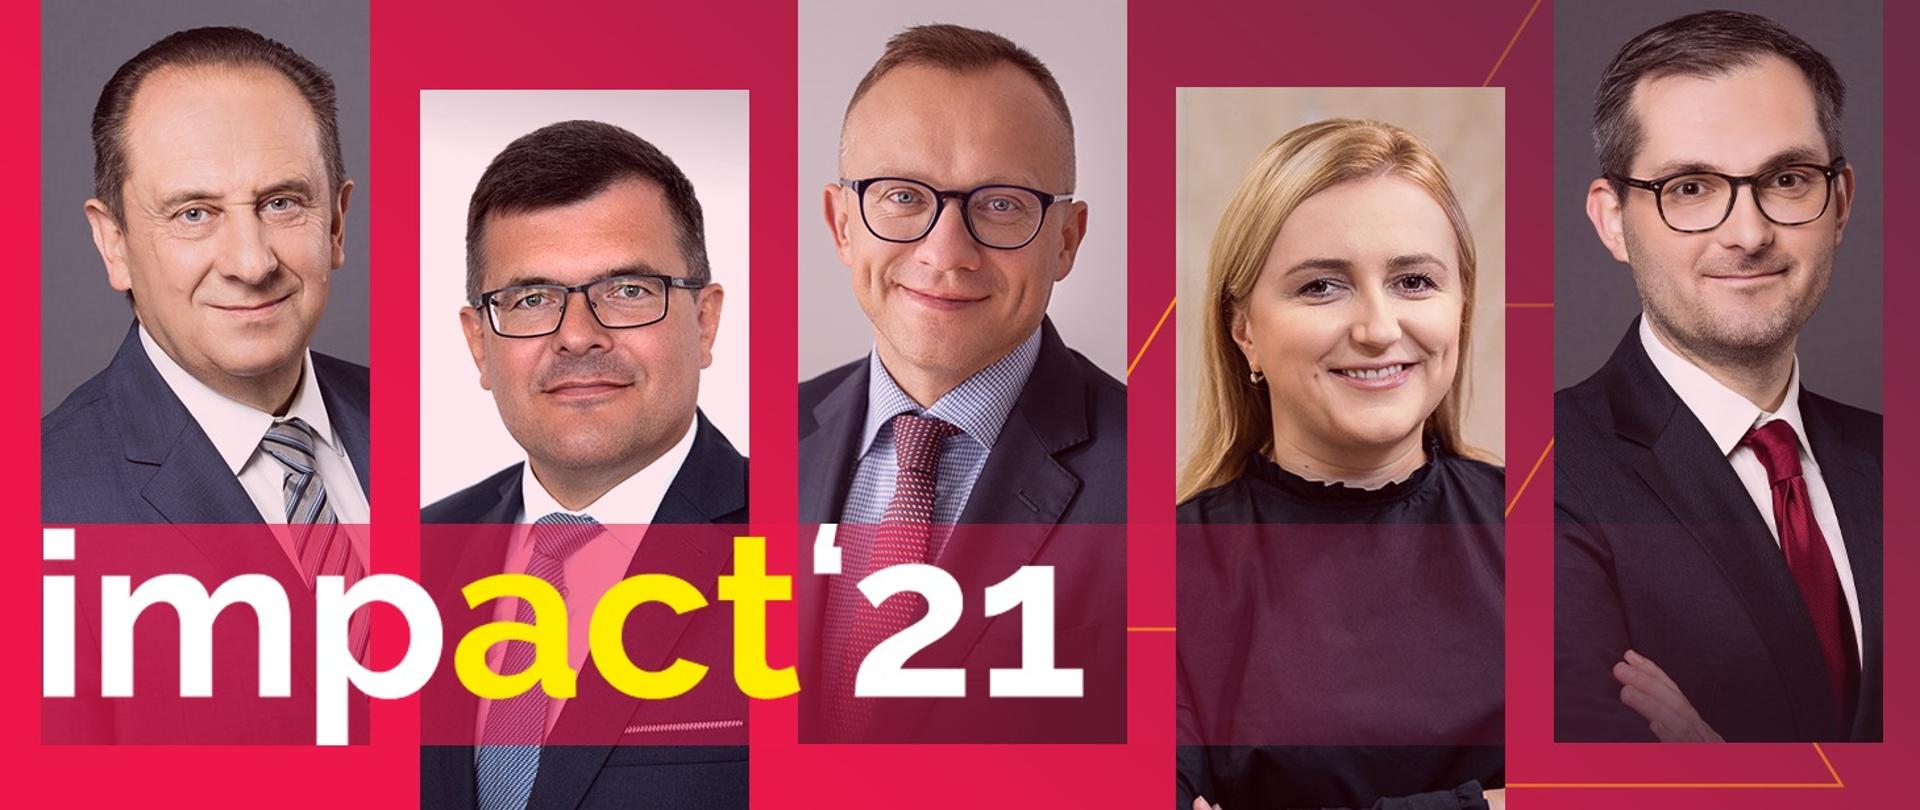 Ministrowie MRiT biorący udział w impact'21 - zdjęcia pięciu wiceministrów - od lewej Andrzej Gut-Mostowy, Piotr Uściński, Artur Soboń, Olga Semeniuk i Marek Niedużak